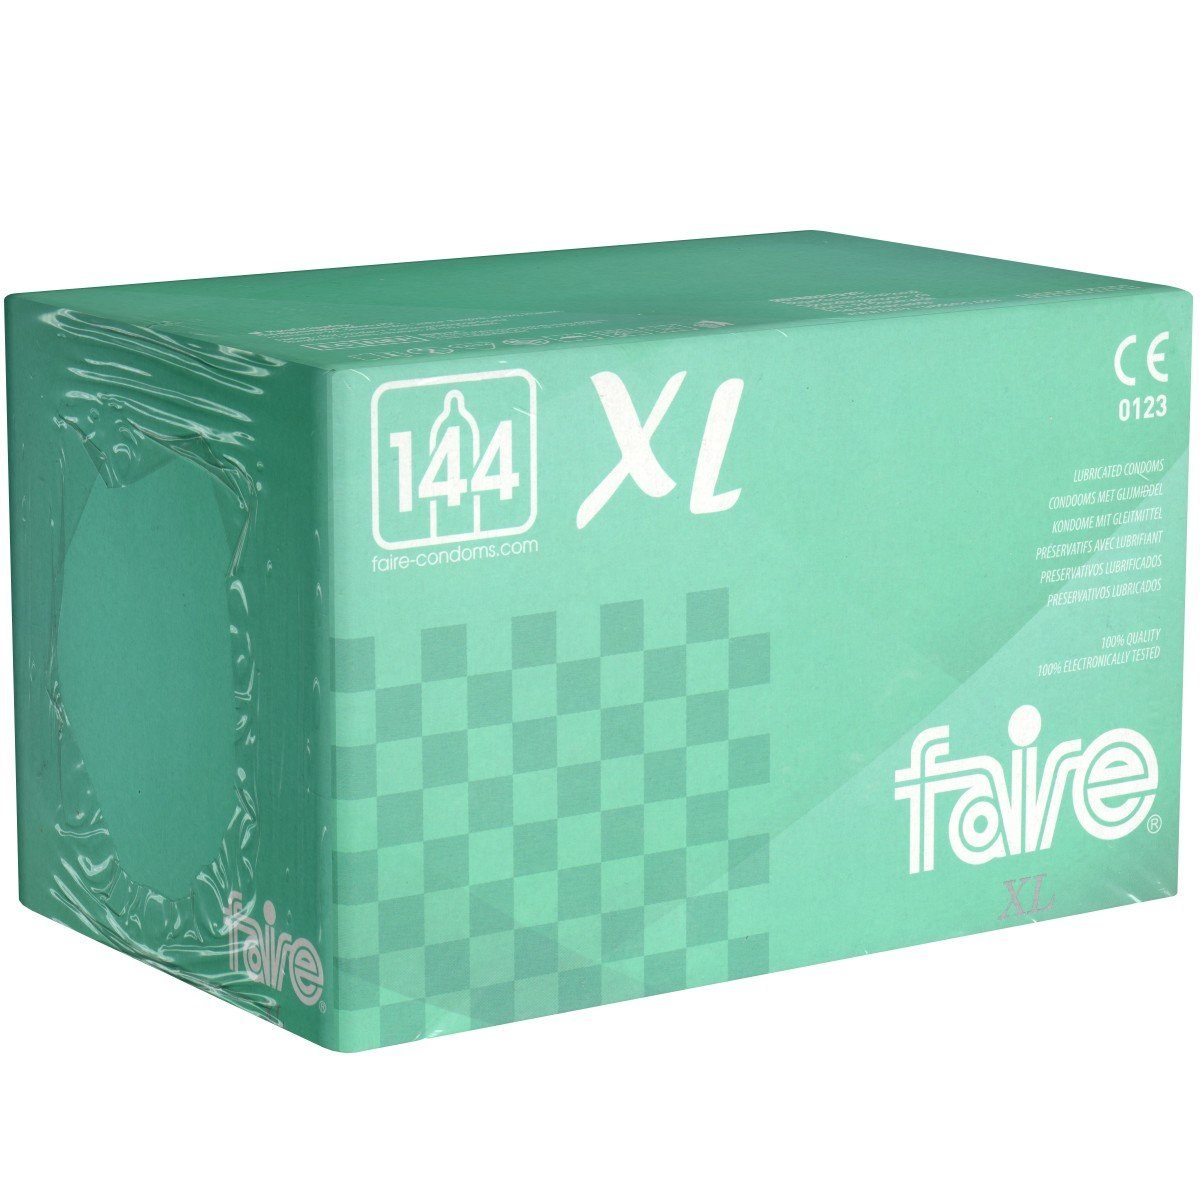 Faire Kondome XL mit, einfache, große St., der Großpackung in Packung 144 XXL-Kondome